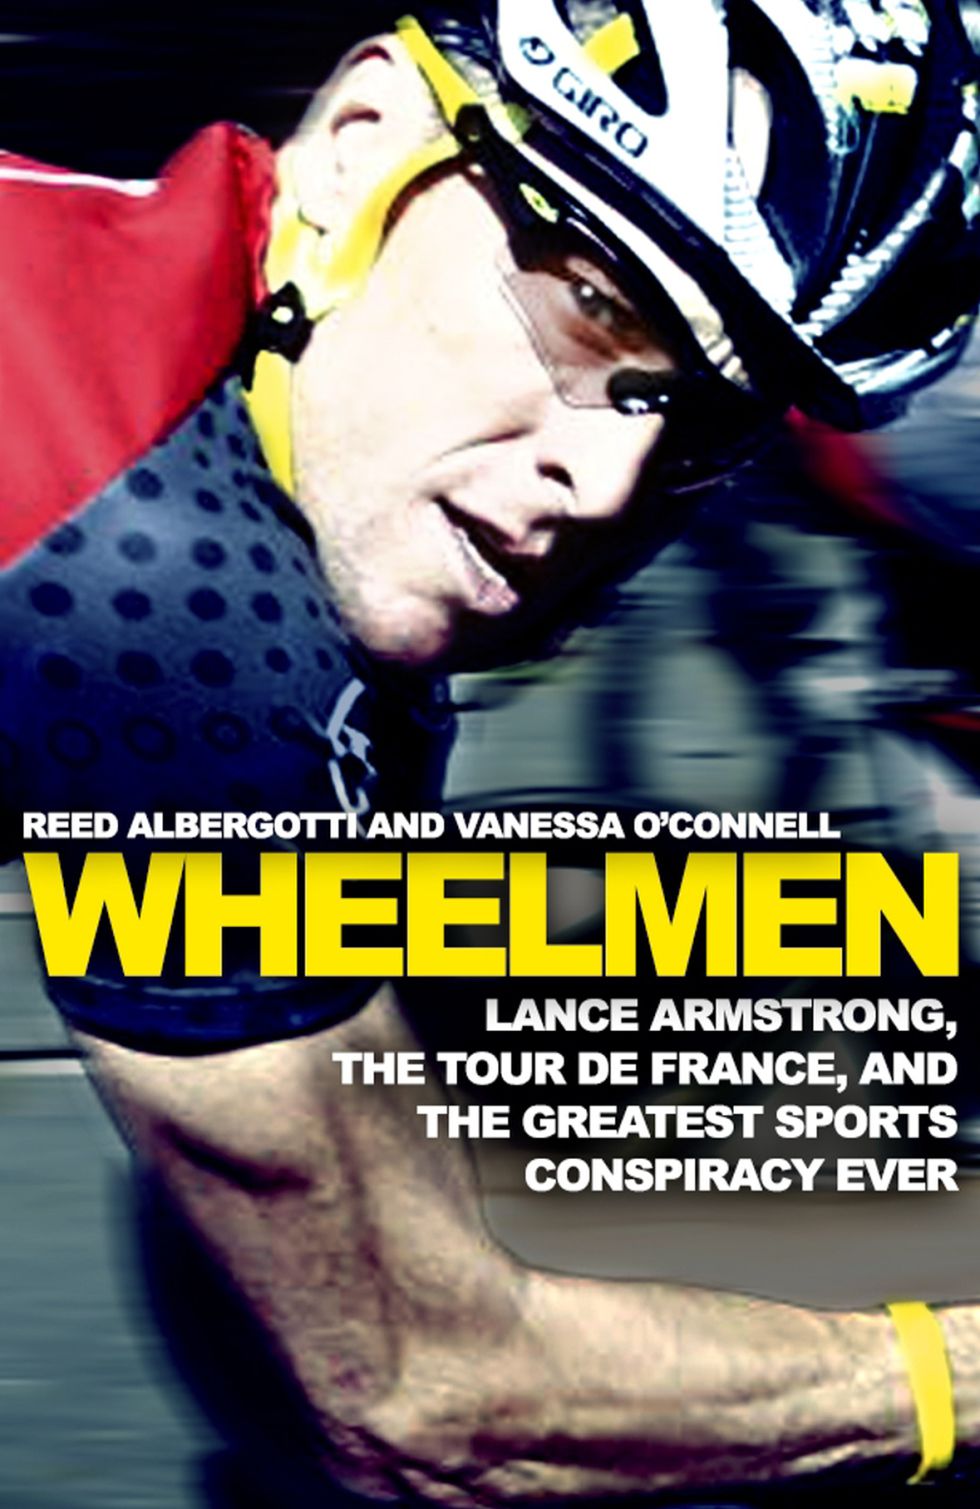 Wheelmen: “Sheryl Crow vio cómo se dopaba Armstrong”